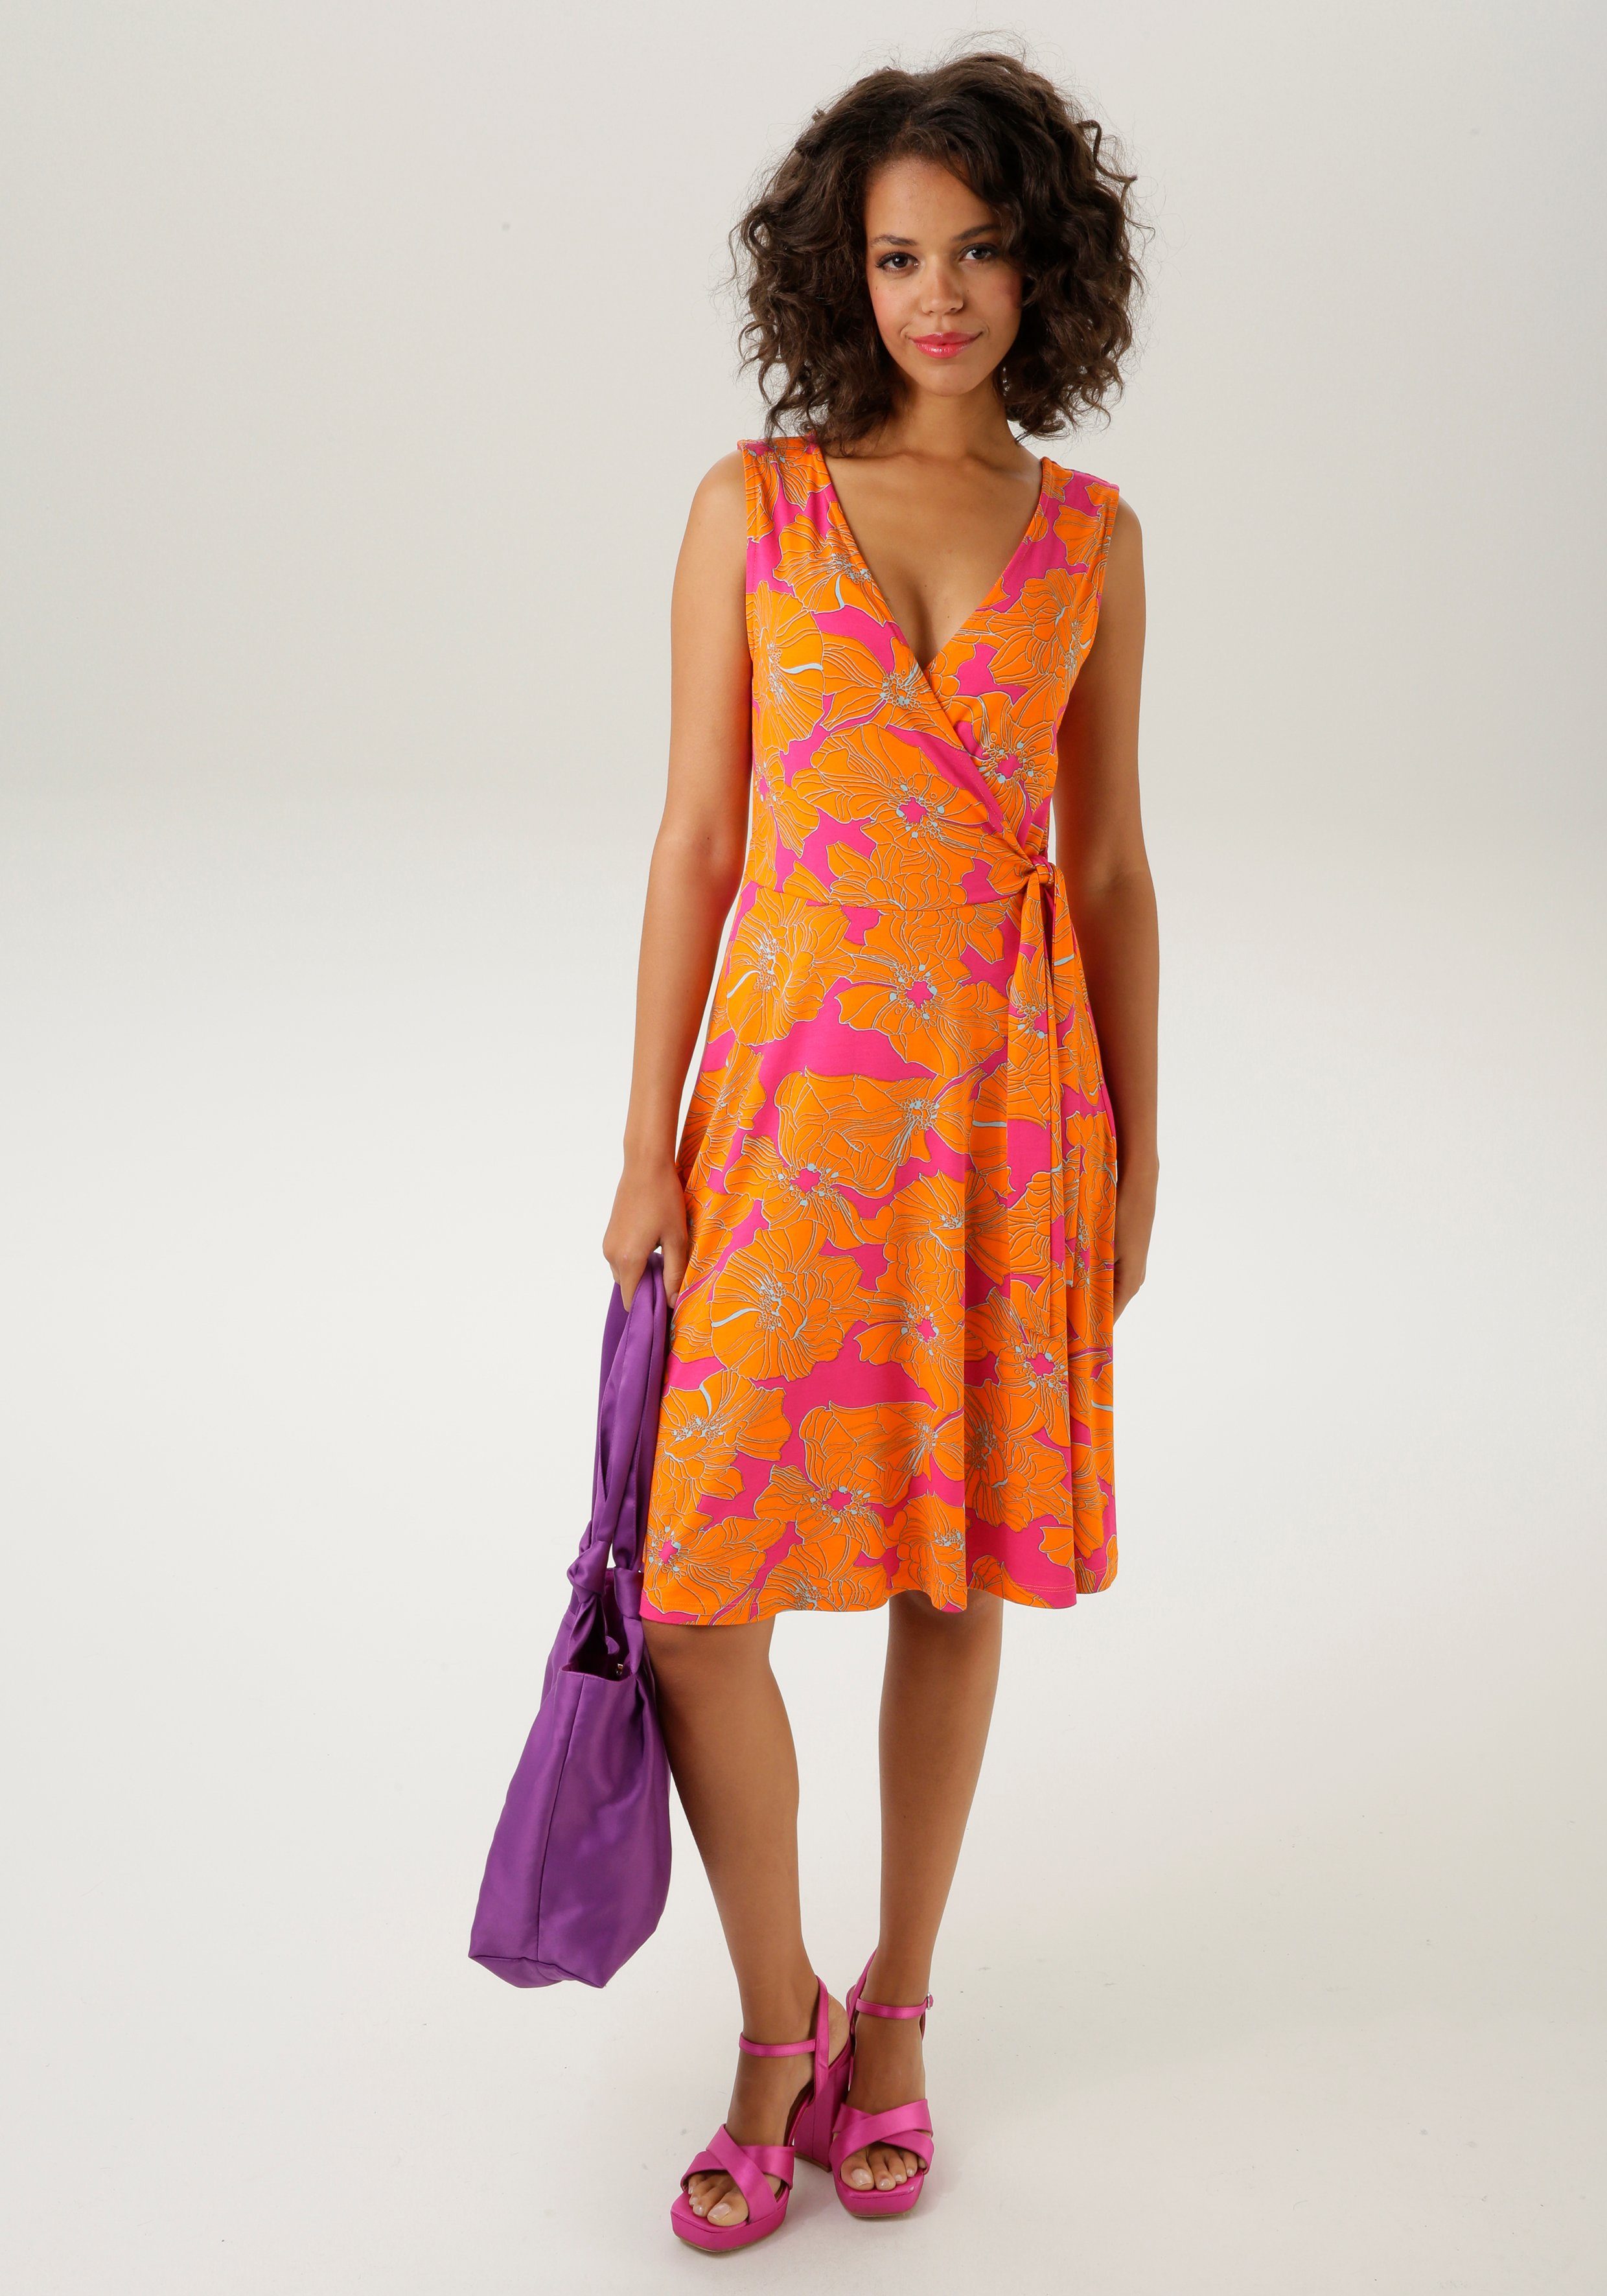 KOLLEKTION Aniston CASUAL großflächigem Sommerkleid farbintensivem, NEUE mit Blumendruck -